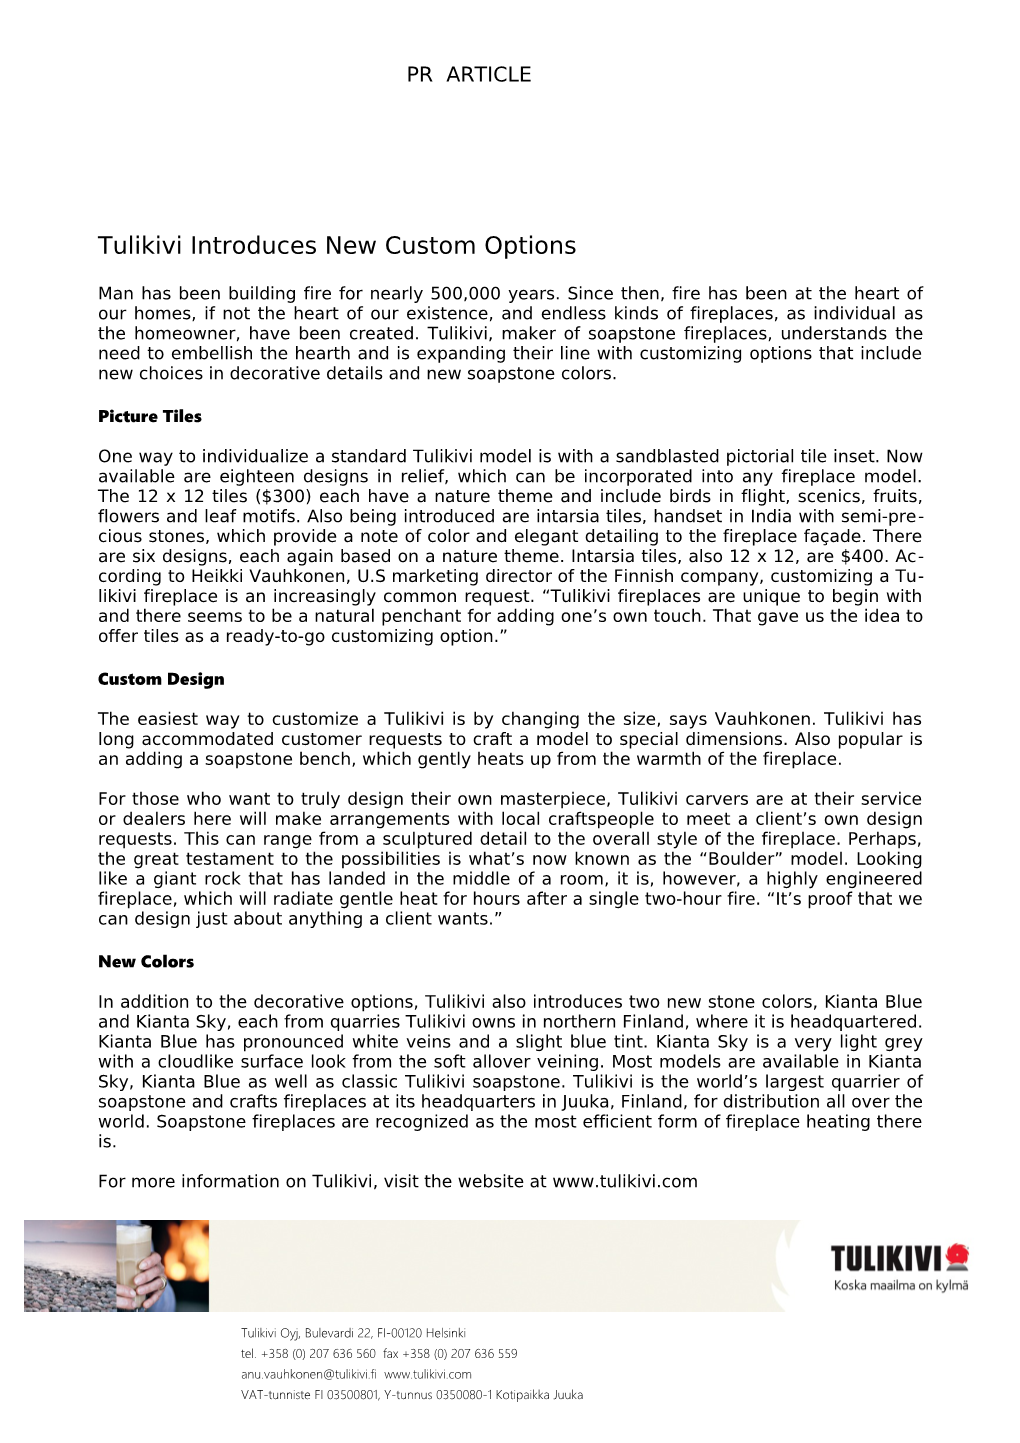 Tulikivi Introduces New Custom Options